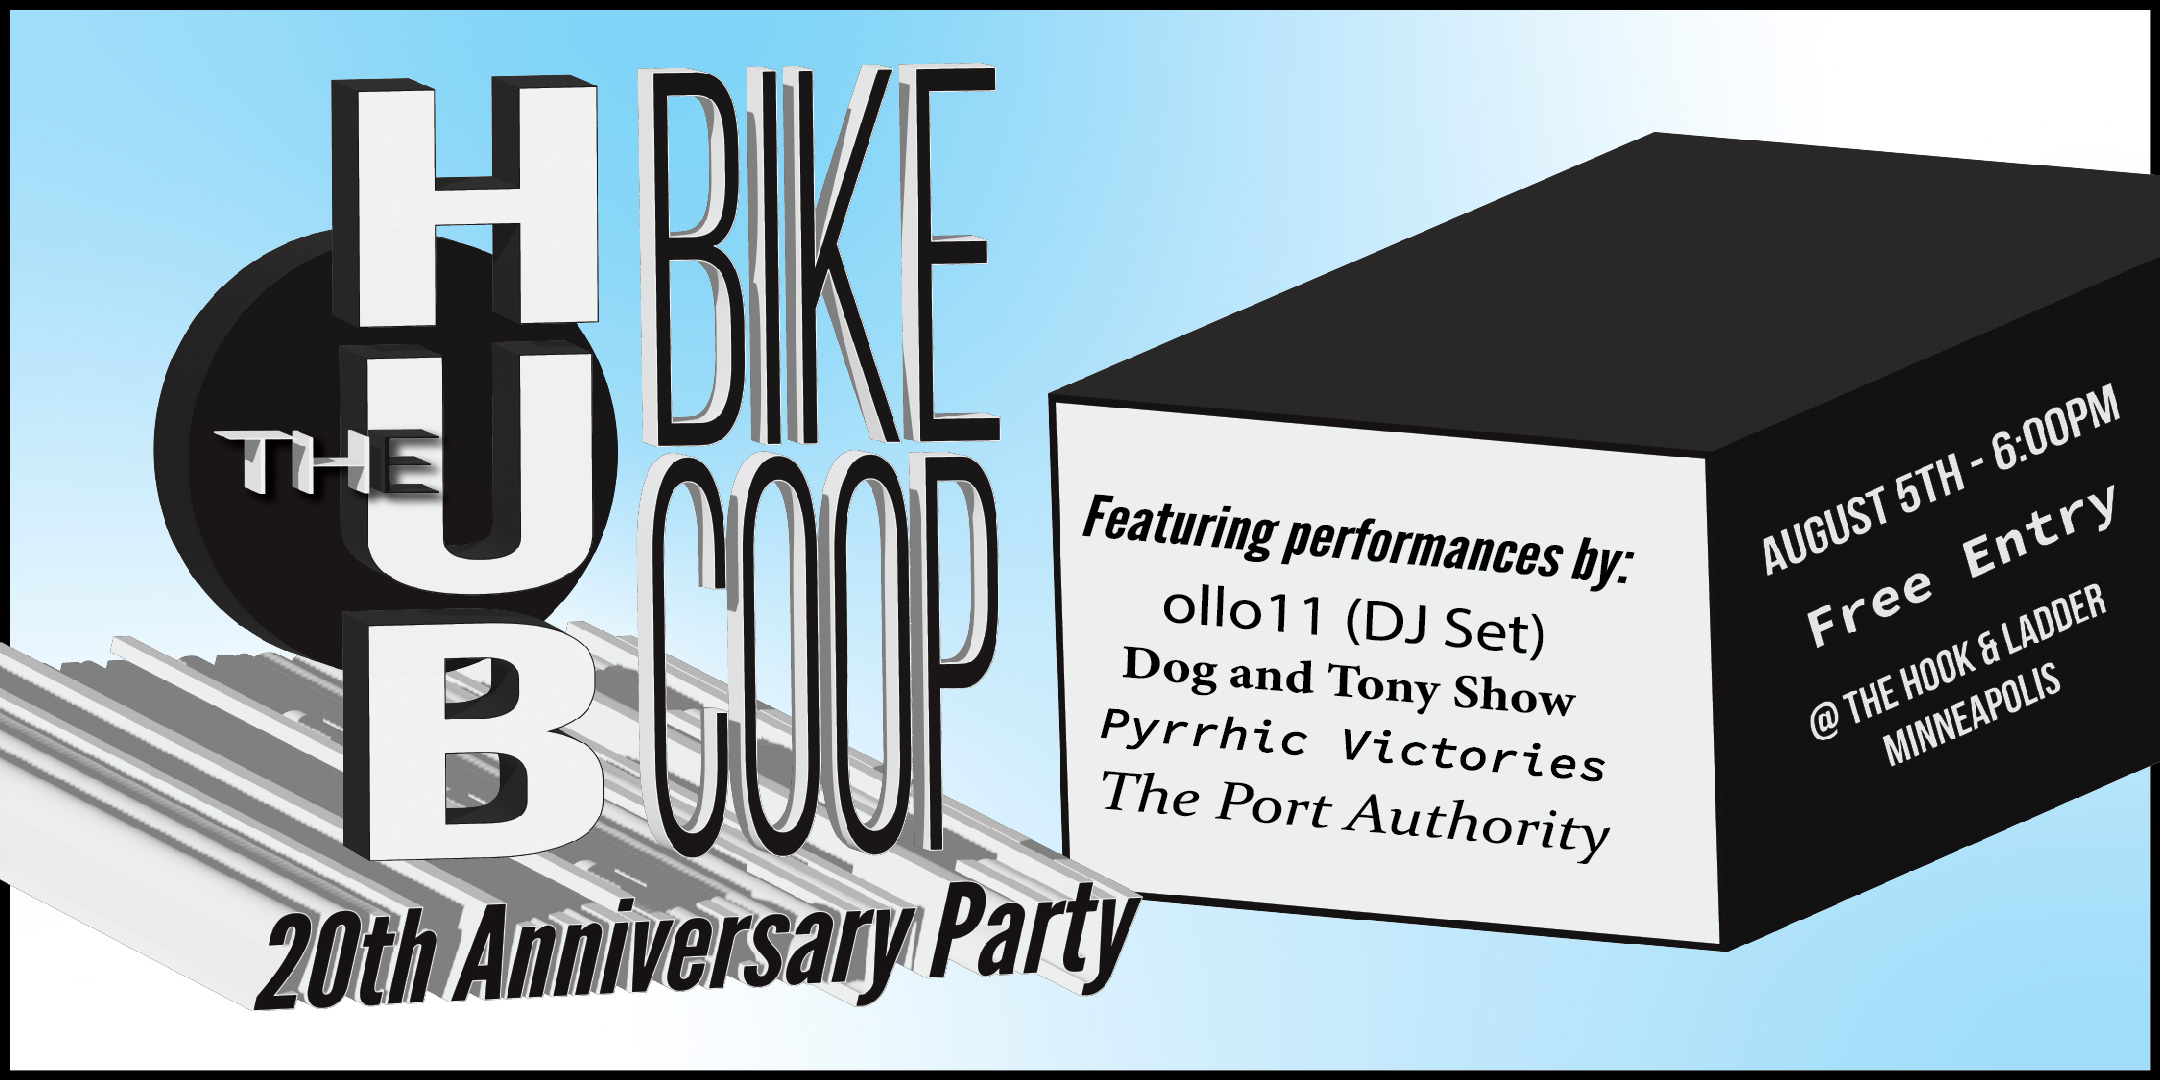 The Hub Bike Co-op 20th Anniversary